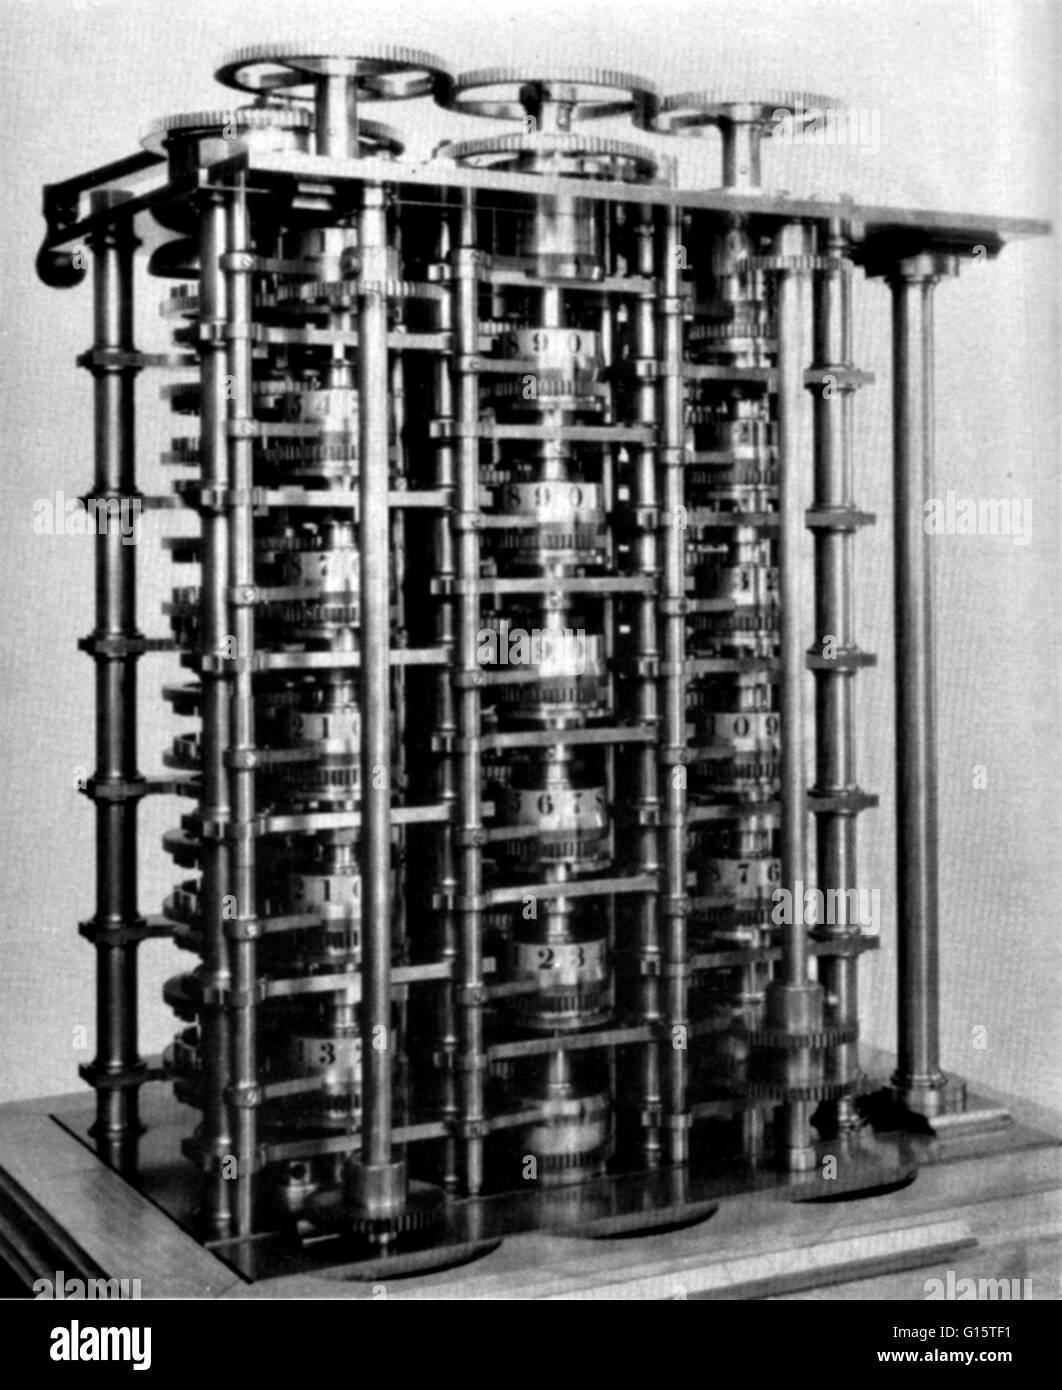 Der Unterschied-Motor war Charles Babbage Design für die erste automatische mechanische  Rechenmaschine. Die Difference Engine wurde ein Sonder-Gerät für die  Produktion von mathematischen Tabellen bestimmt. Babbage begann die Arbeit  an der Difference